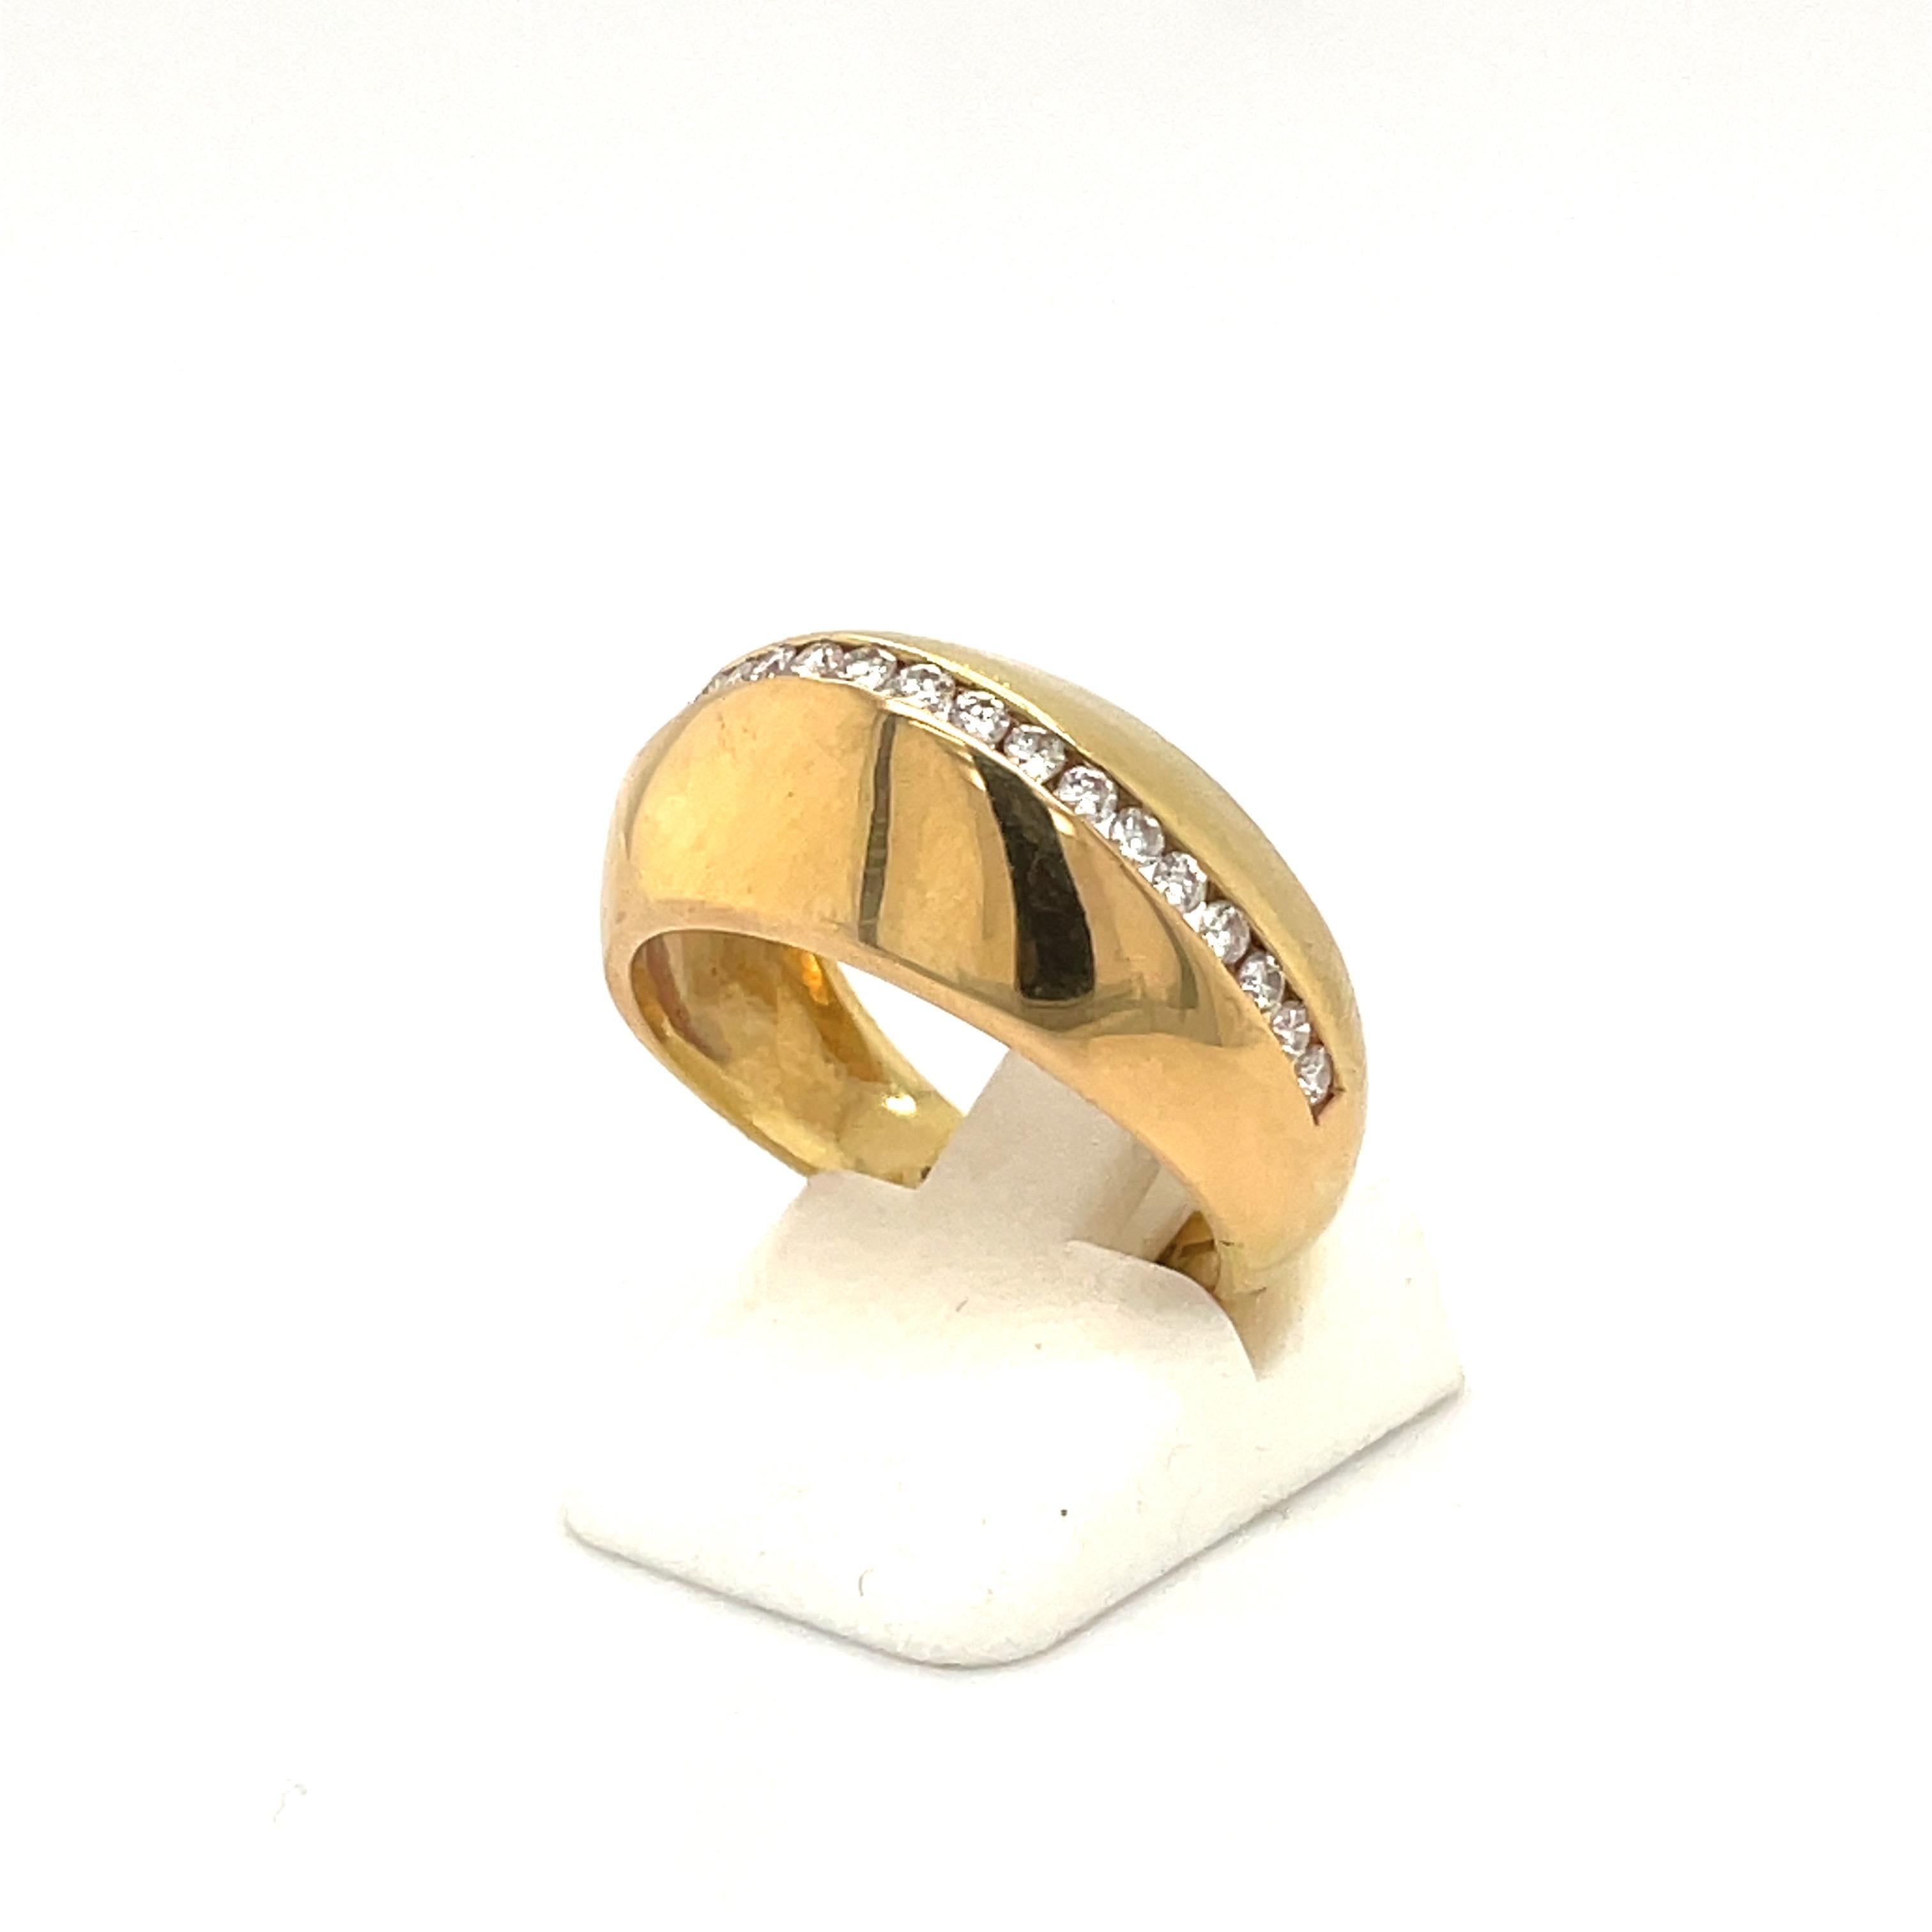 Eine klassische Kuppel Stil 18 Karat Gelbgold hochglanzpoliert Kuppel Ring. Die Mitte des Rings ist mit einer einzigen Reihe runder Brillanten besetzt.
Gesamtgewicht des Diamanten 0,63 Karat
Ringgröße 7,5 kann verfügbar sein
Gestempelt 750